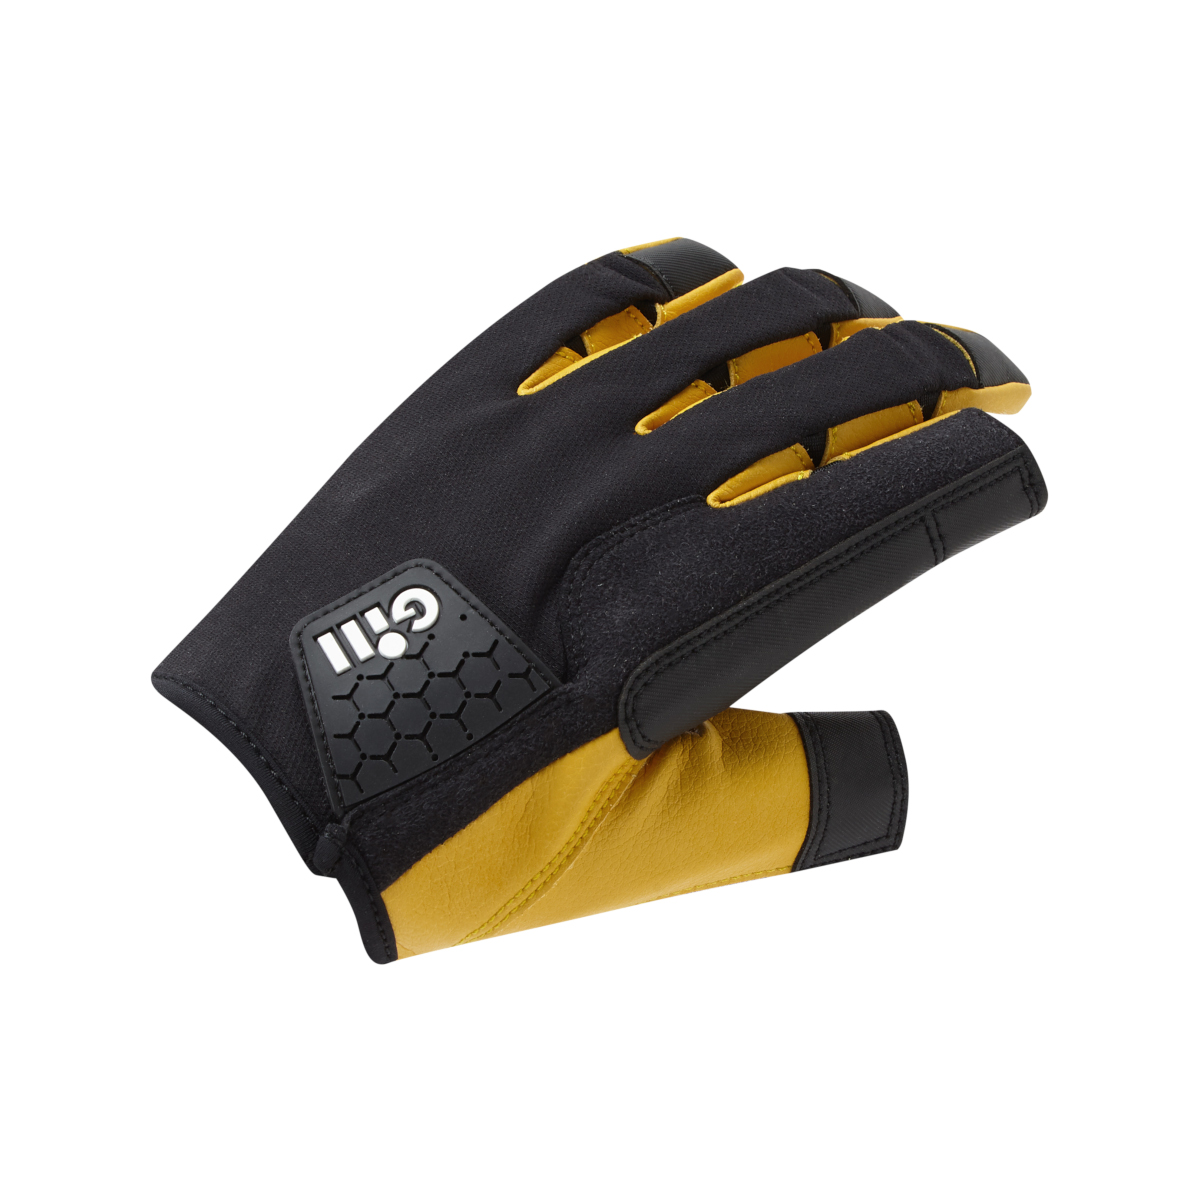 Gill Pro Gloves zeilhandschoenen gesloten vinger zwart, maat L